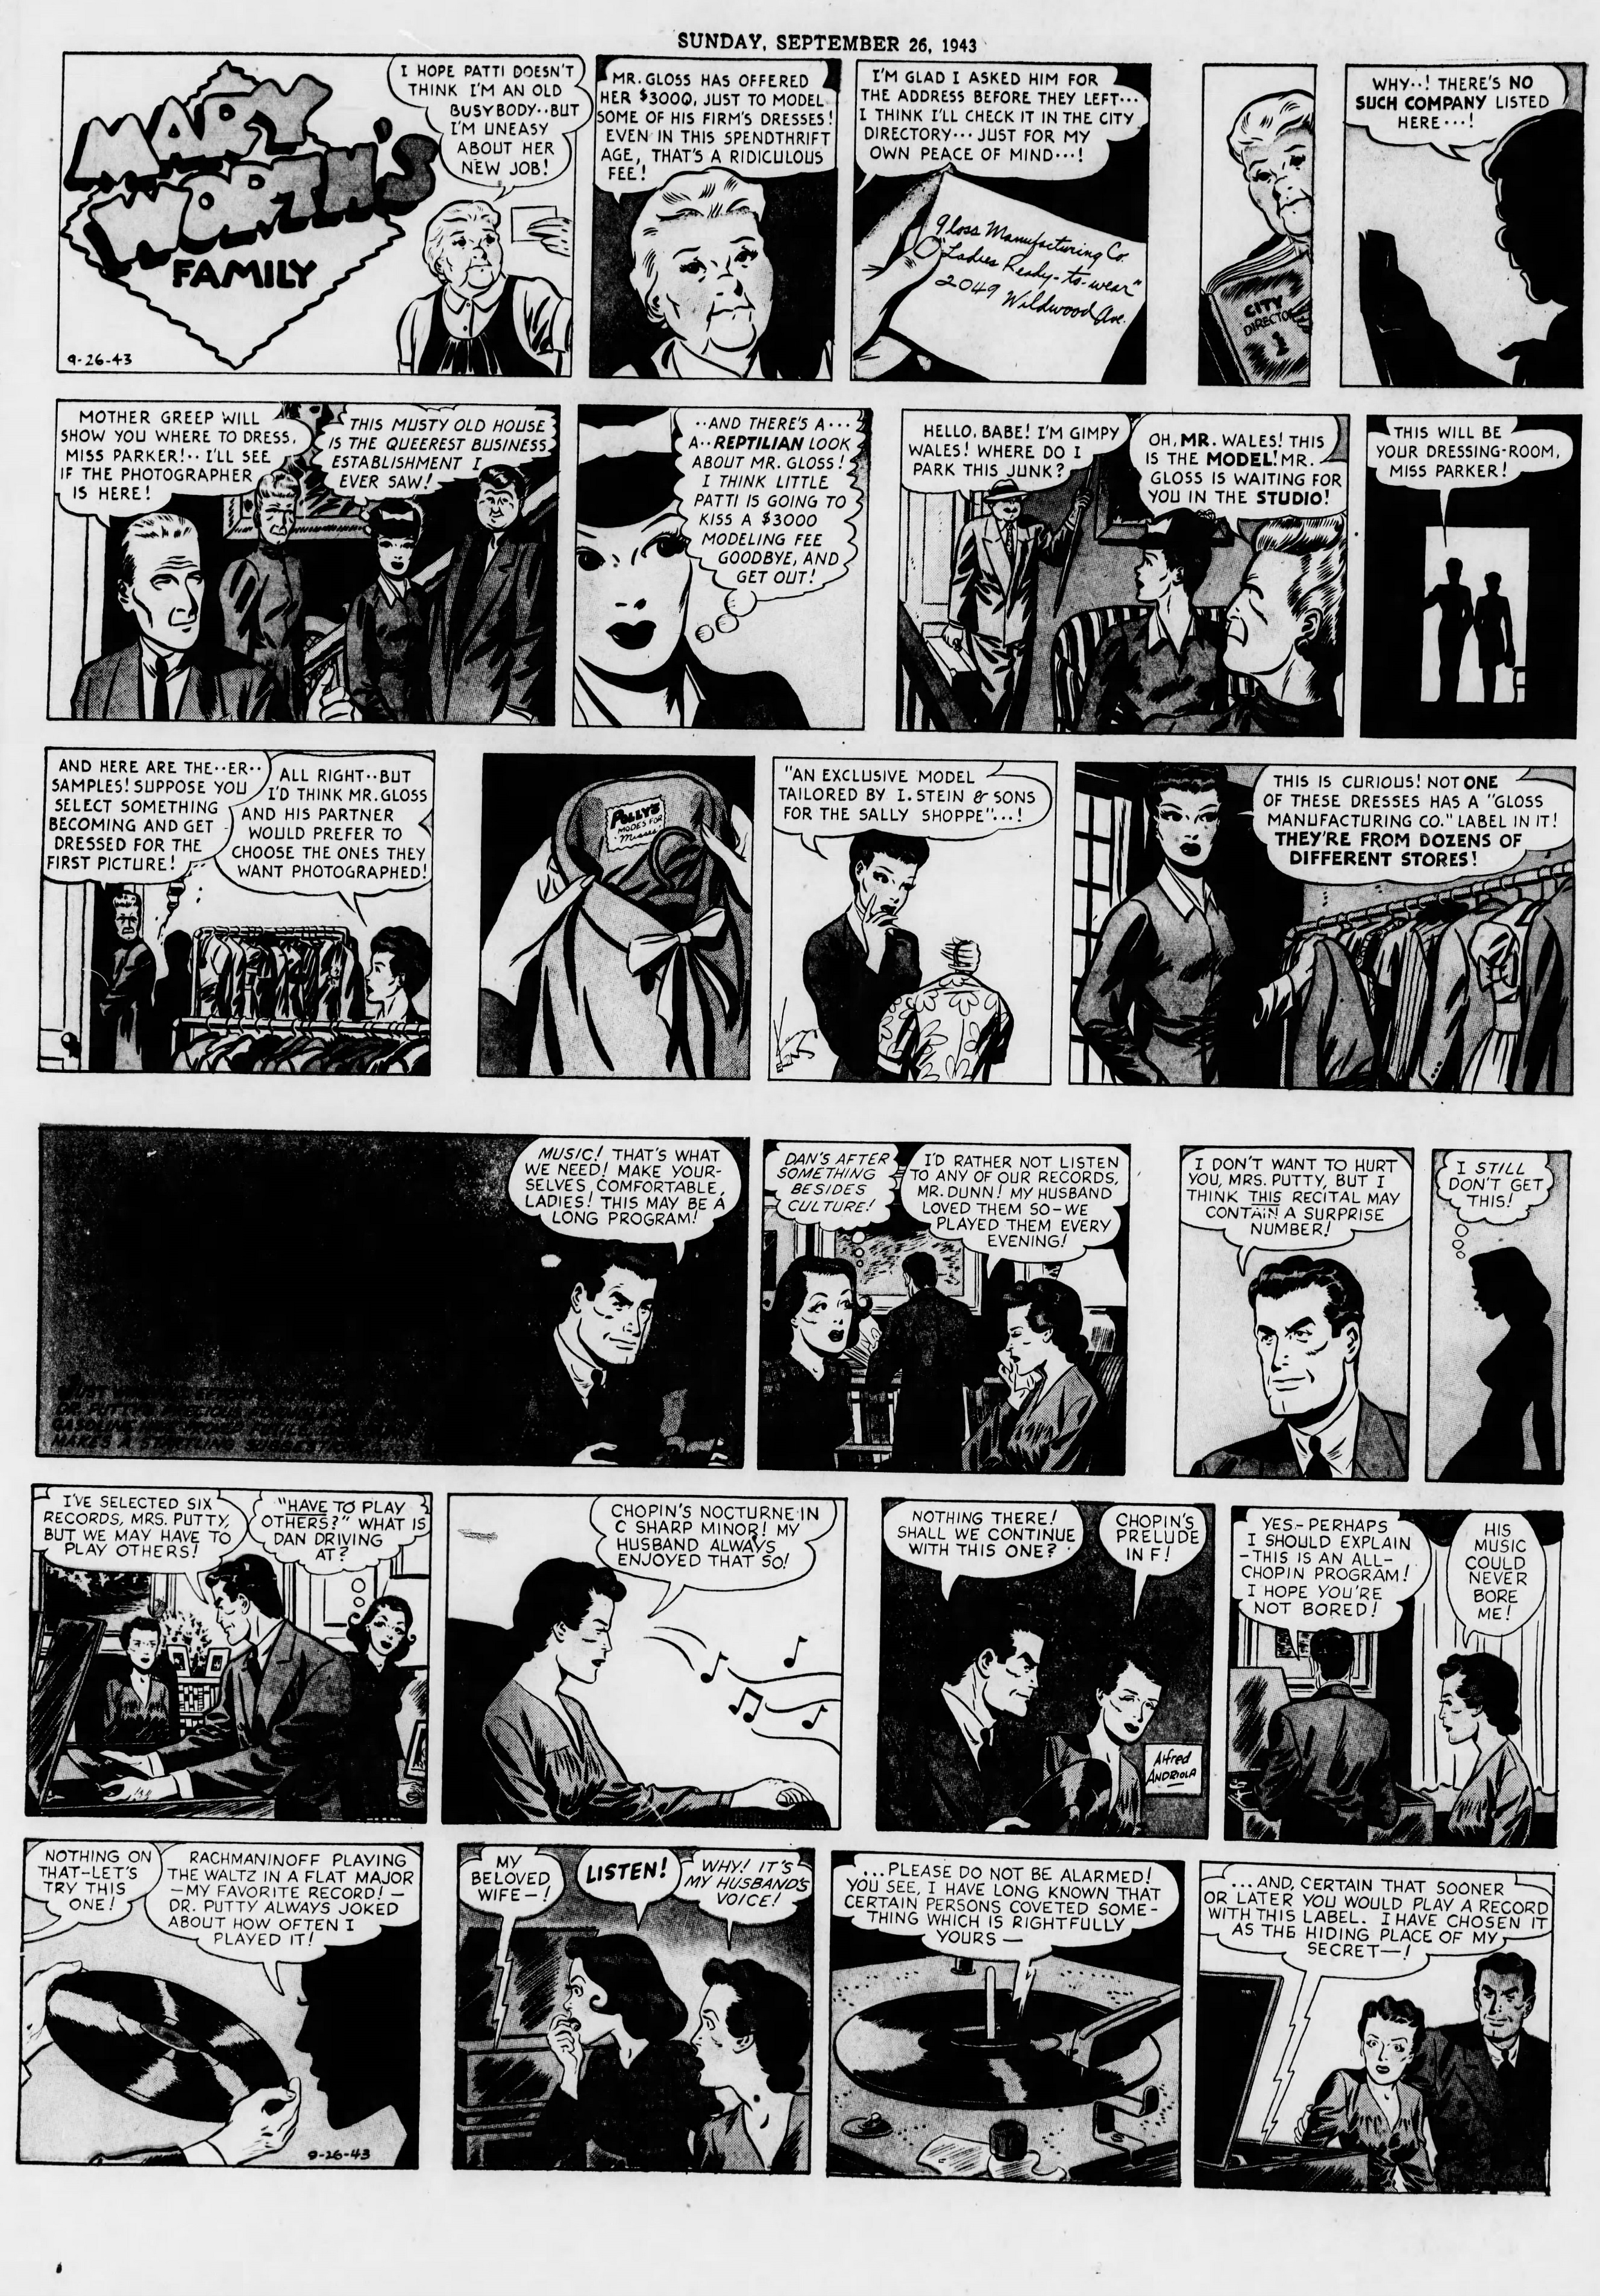 The_Brooklyn_Daily_Eagle_Sun__Sep_26__1943_(9).jpg